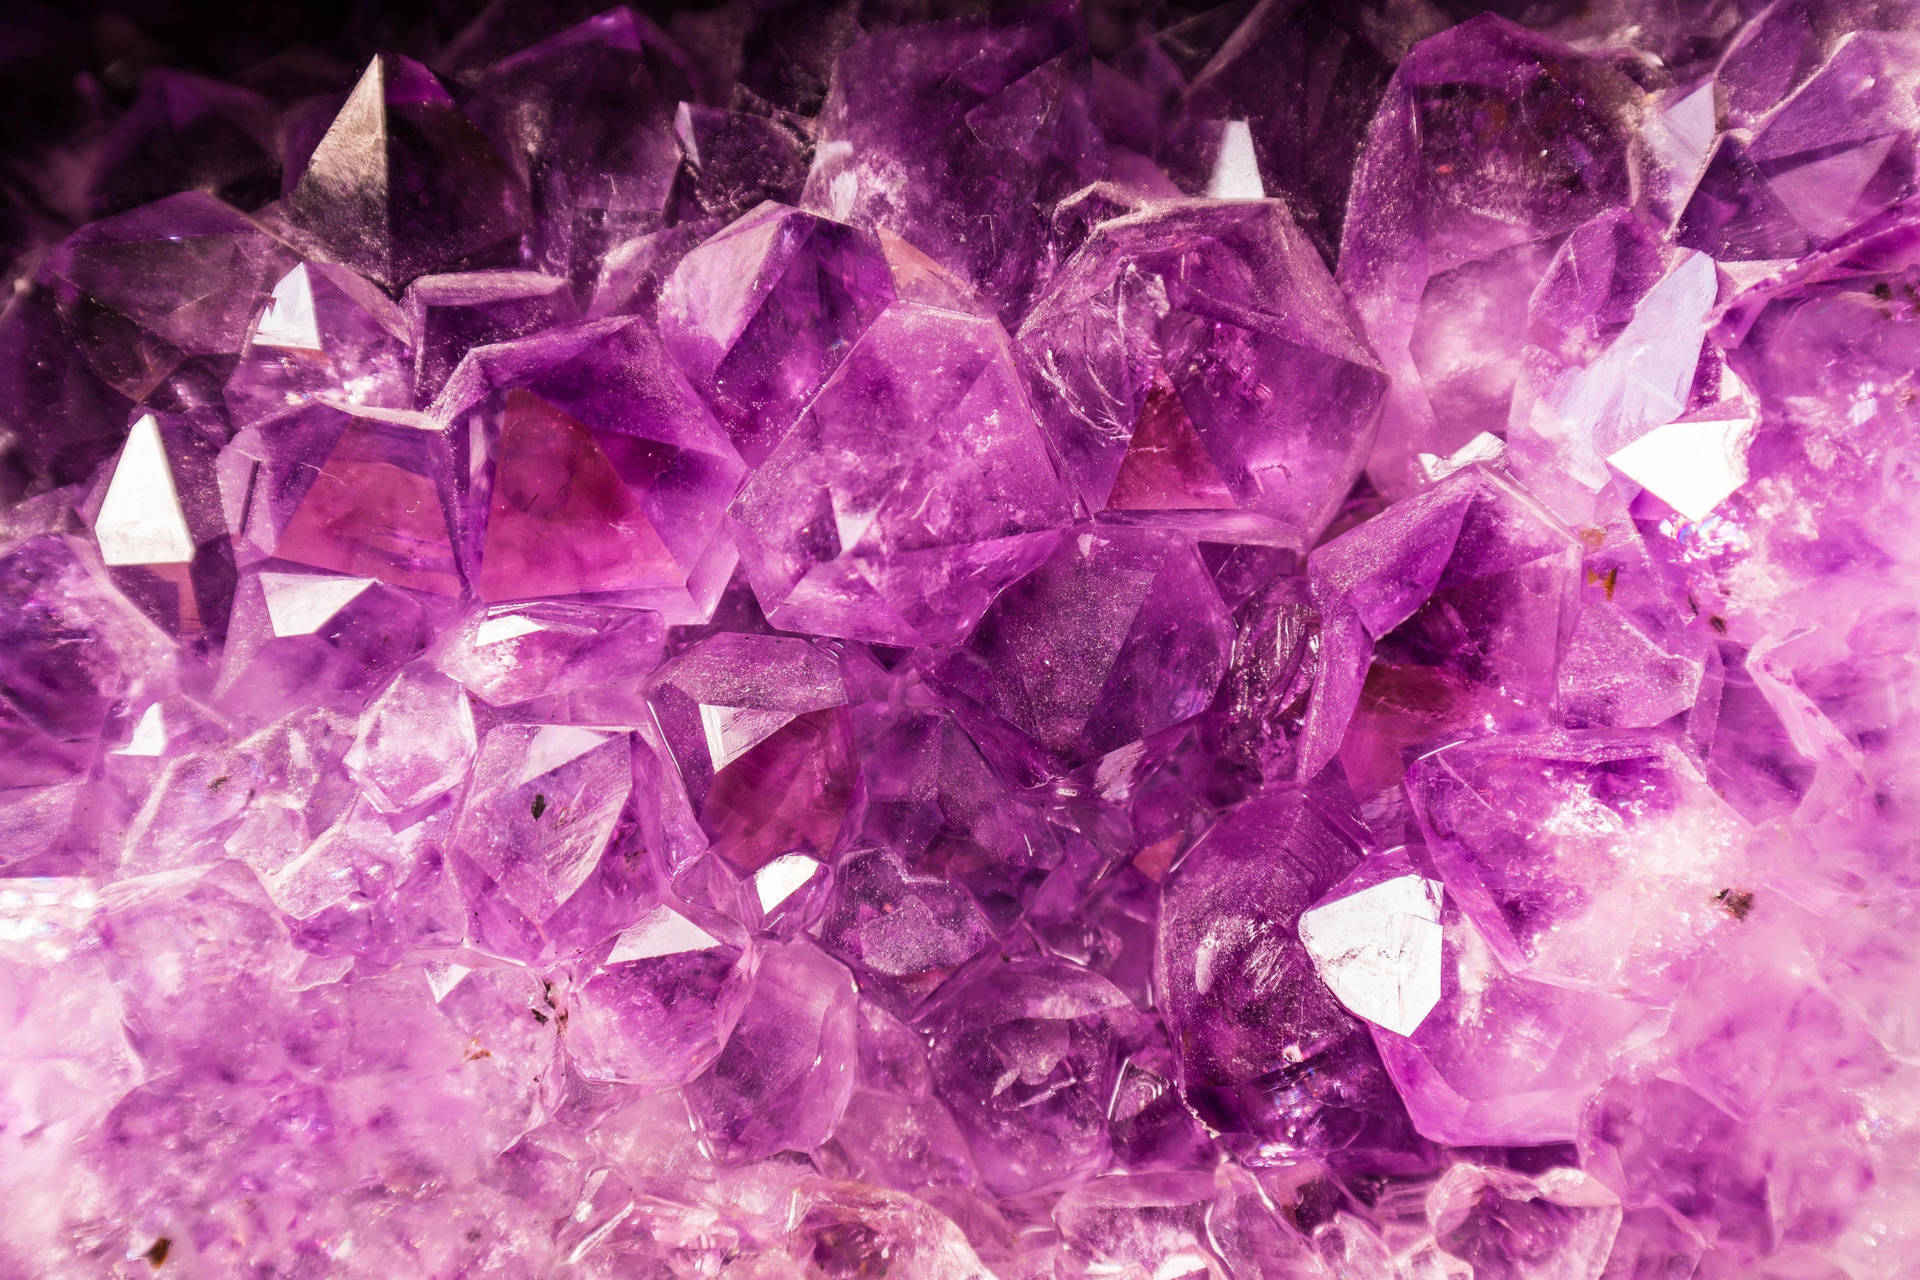 Striking Purple Amethyst Crystal Cluster Wallpaper